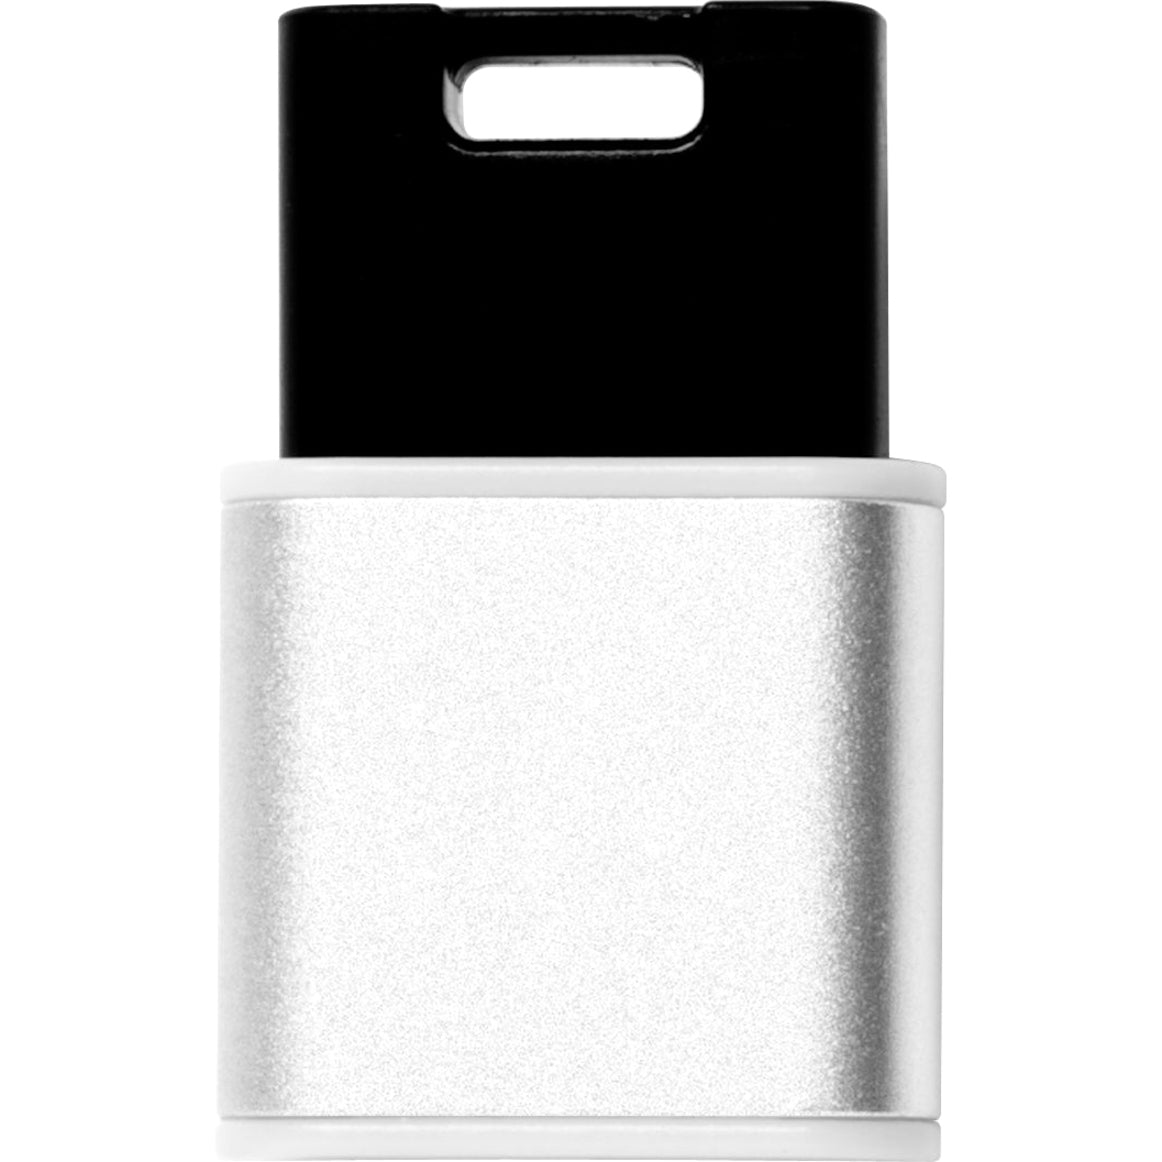 Verbatim 49840 Store 'n' Go Mini Metal USB Drive, 32GB, USB 3.0 Flash Drive